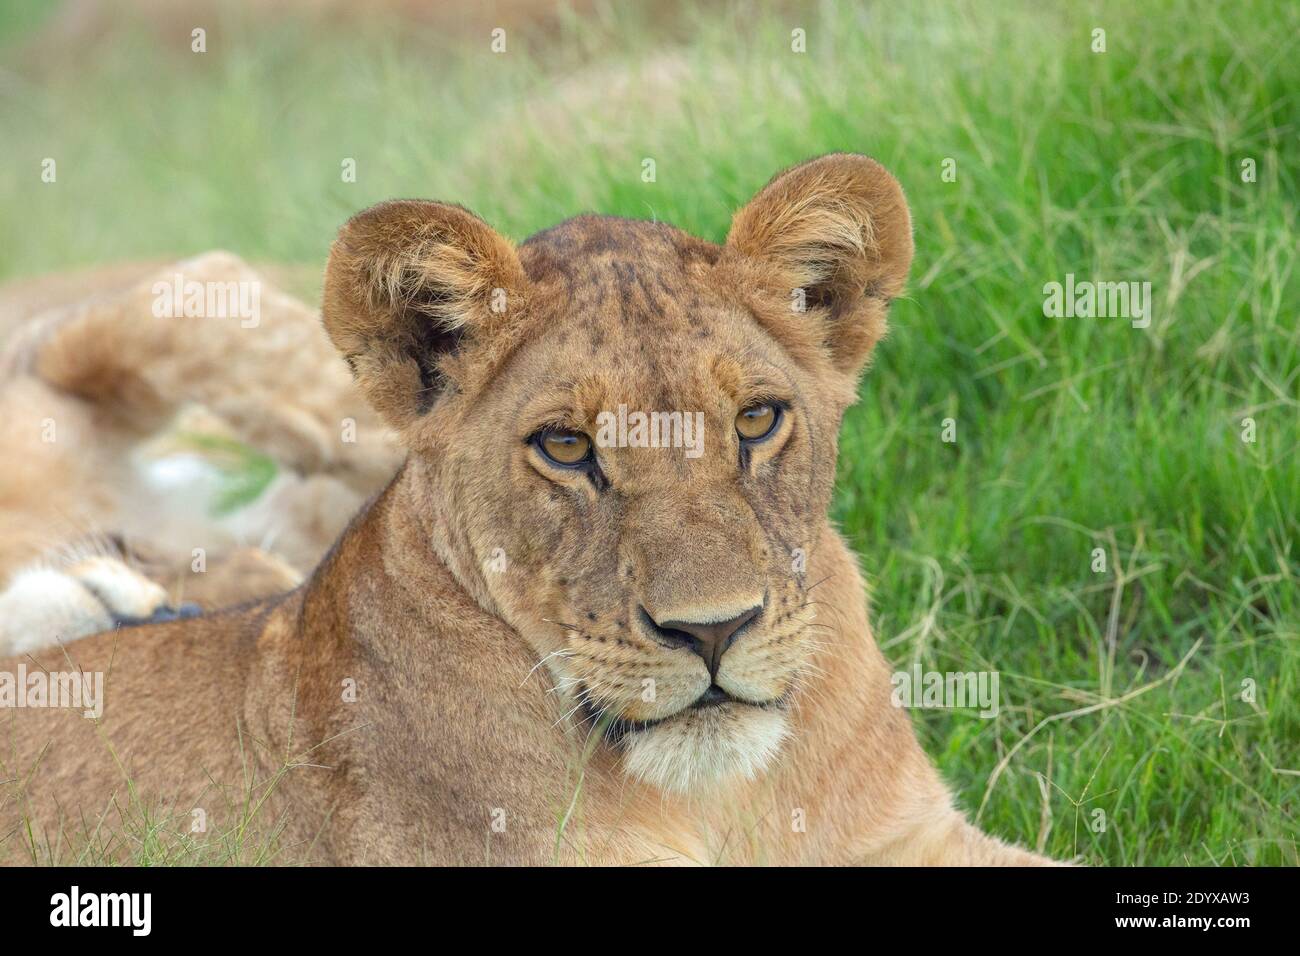 African Lioness (Panthera lio), dettaglio della testa, tratti del viso. Contatto visivo completo. Orecchie comparativamente grandi indicative di un animale più giovane. Foto Stock